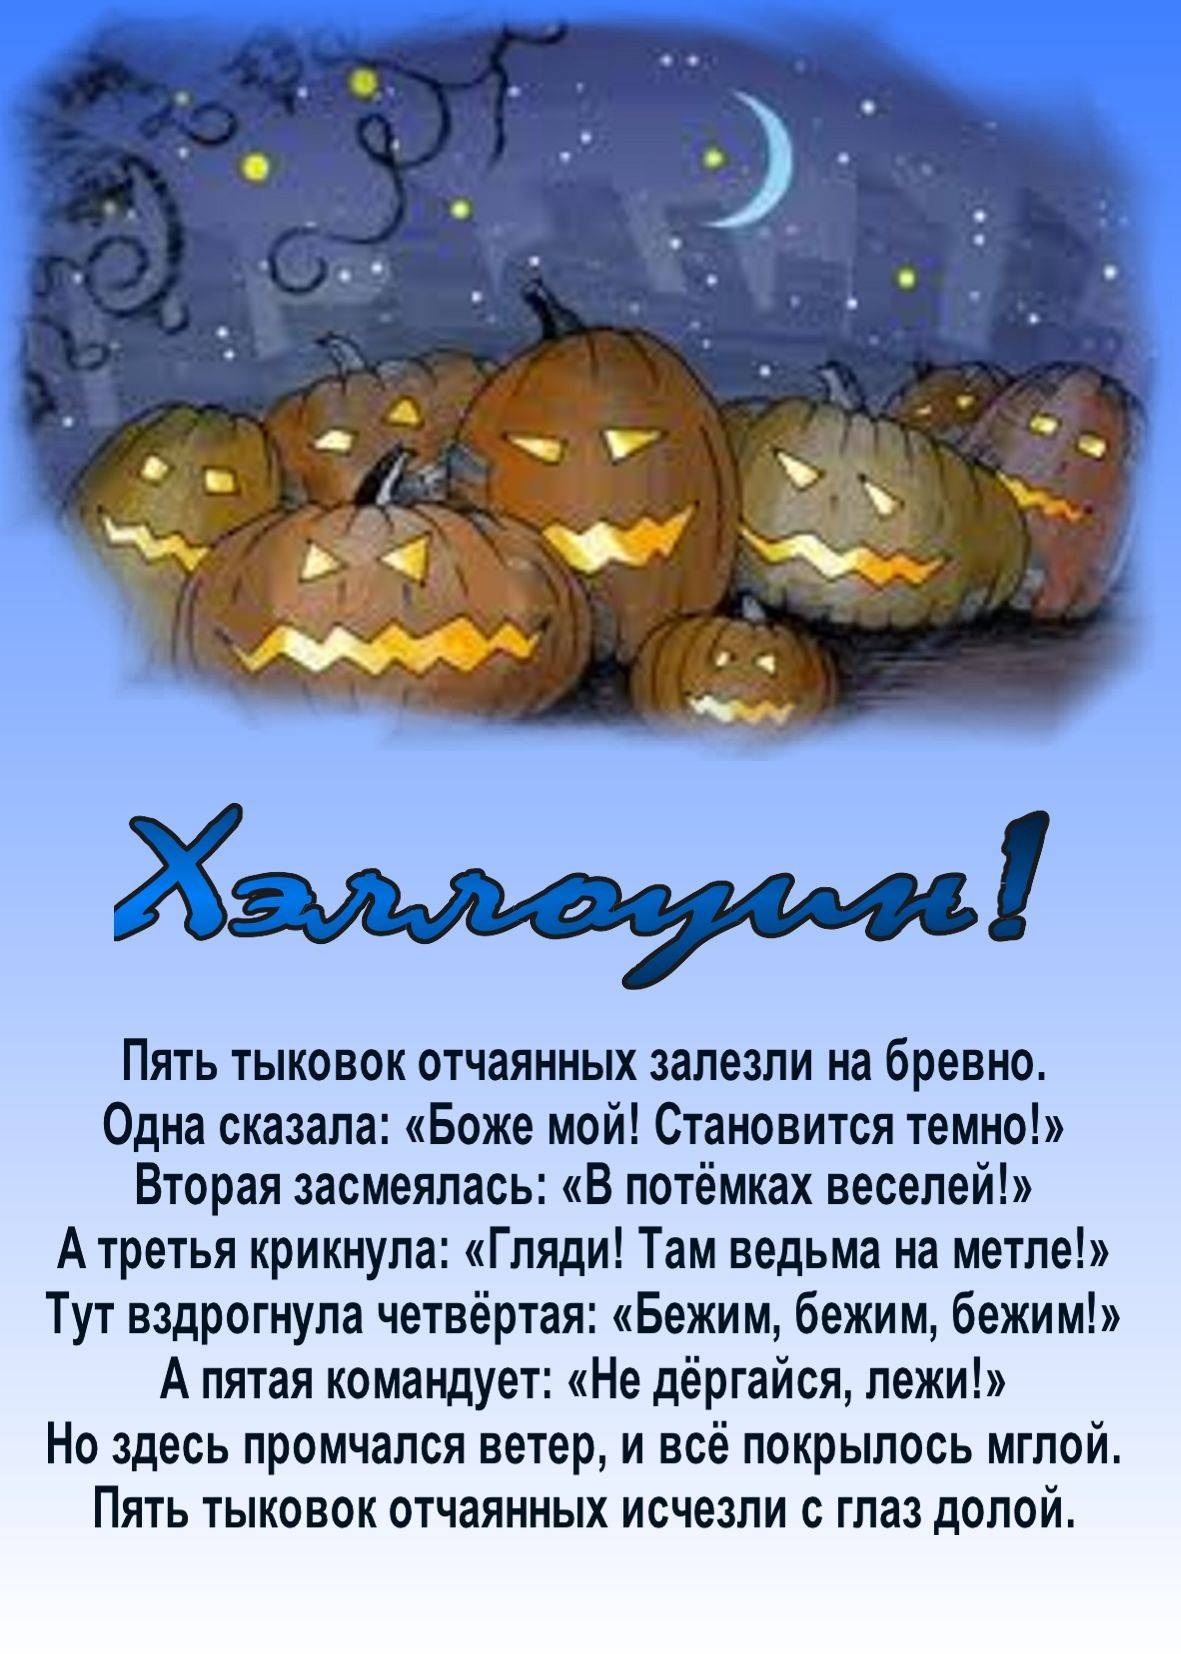 Поздравления на хэллоуин в стихах и открытках